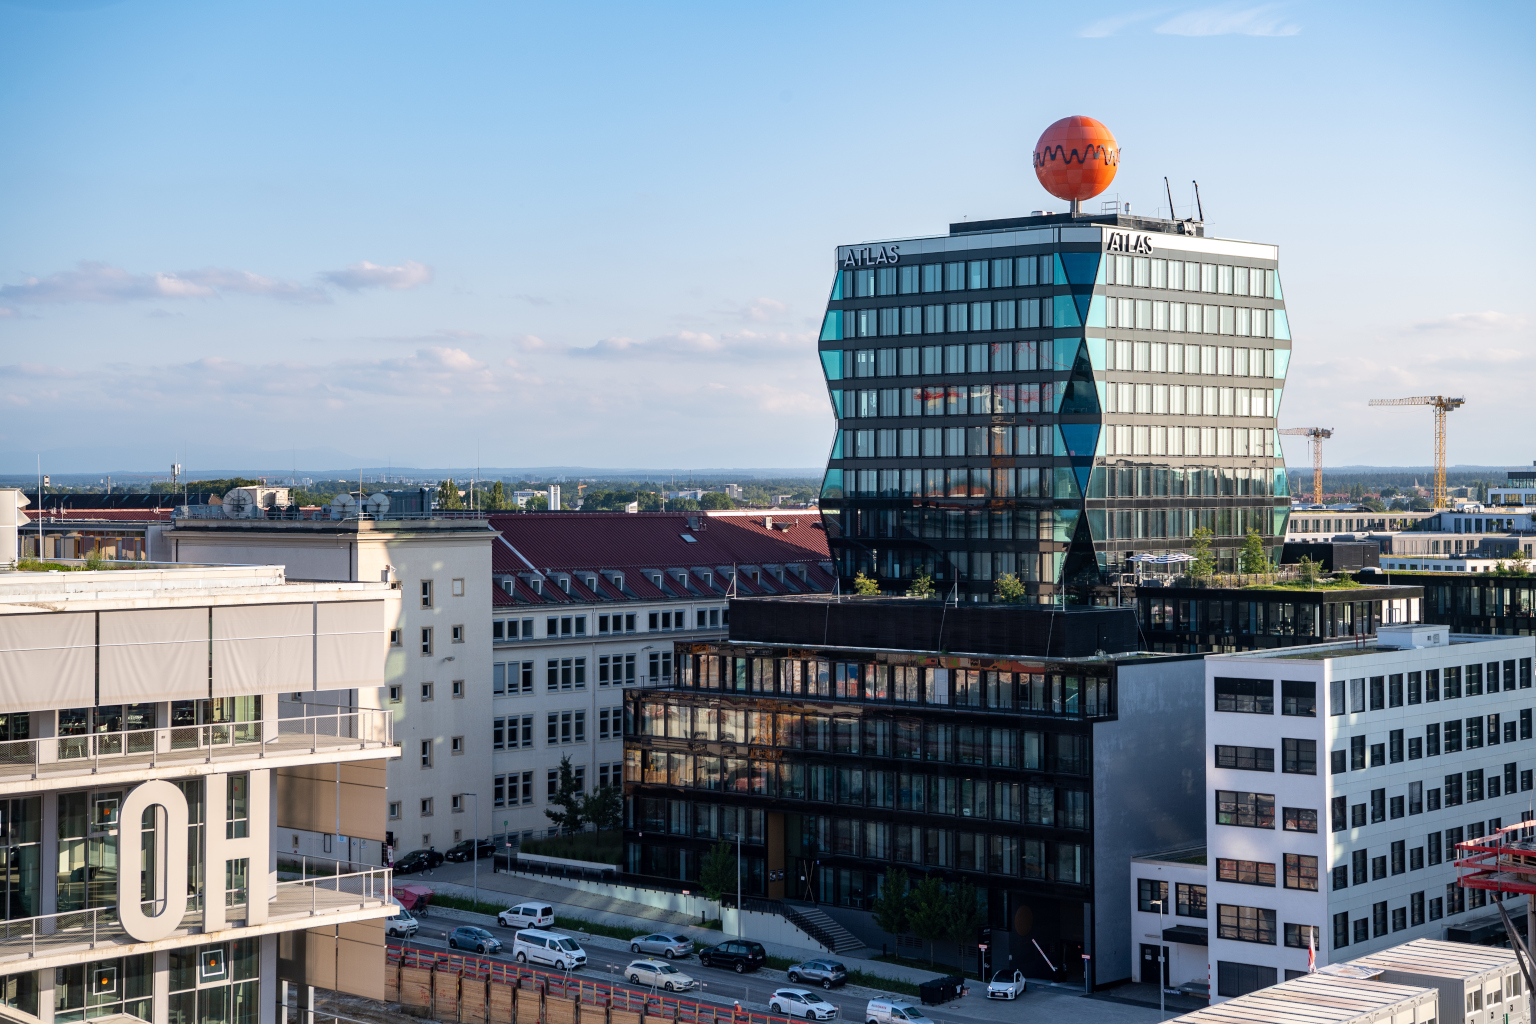 Blick auf neue Gebäude im Münchner Werksviertel, das Atlas Hochhaus mit der orangenen Kugel auf dem Dach und das Werk 12 mit den Großbuchstaben OH